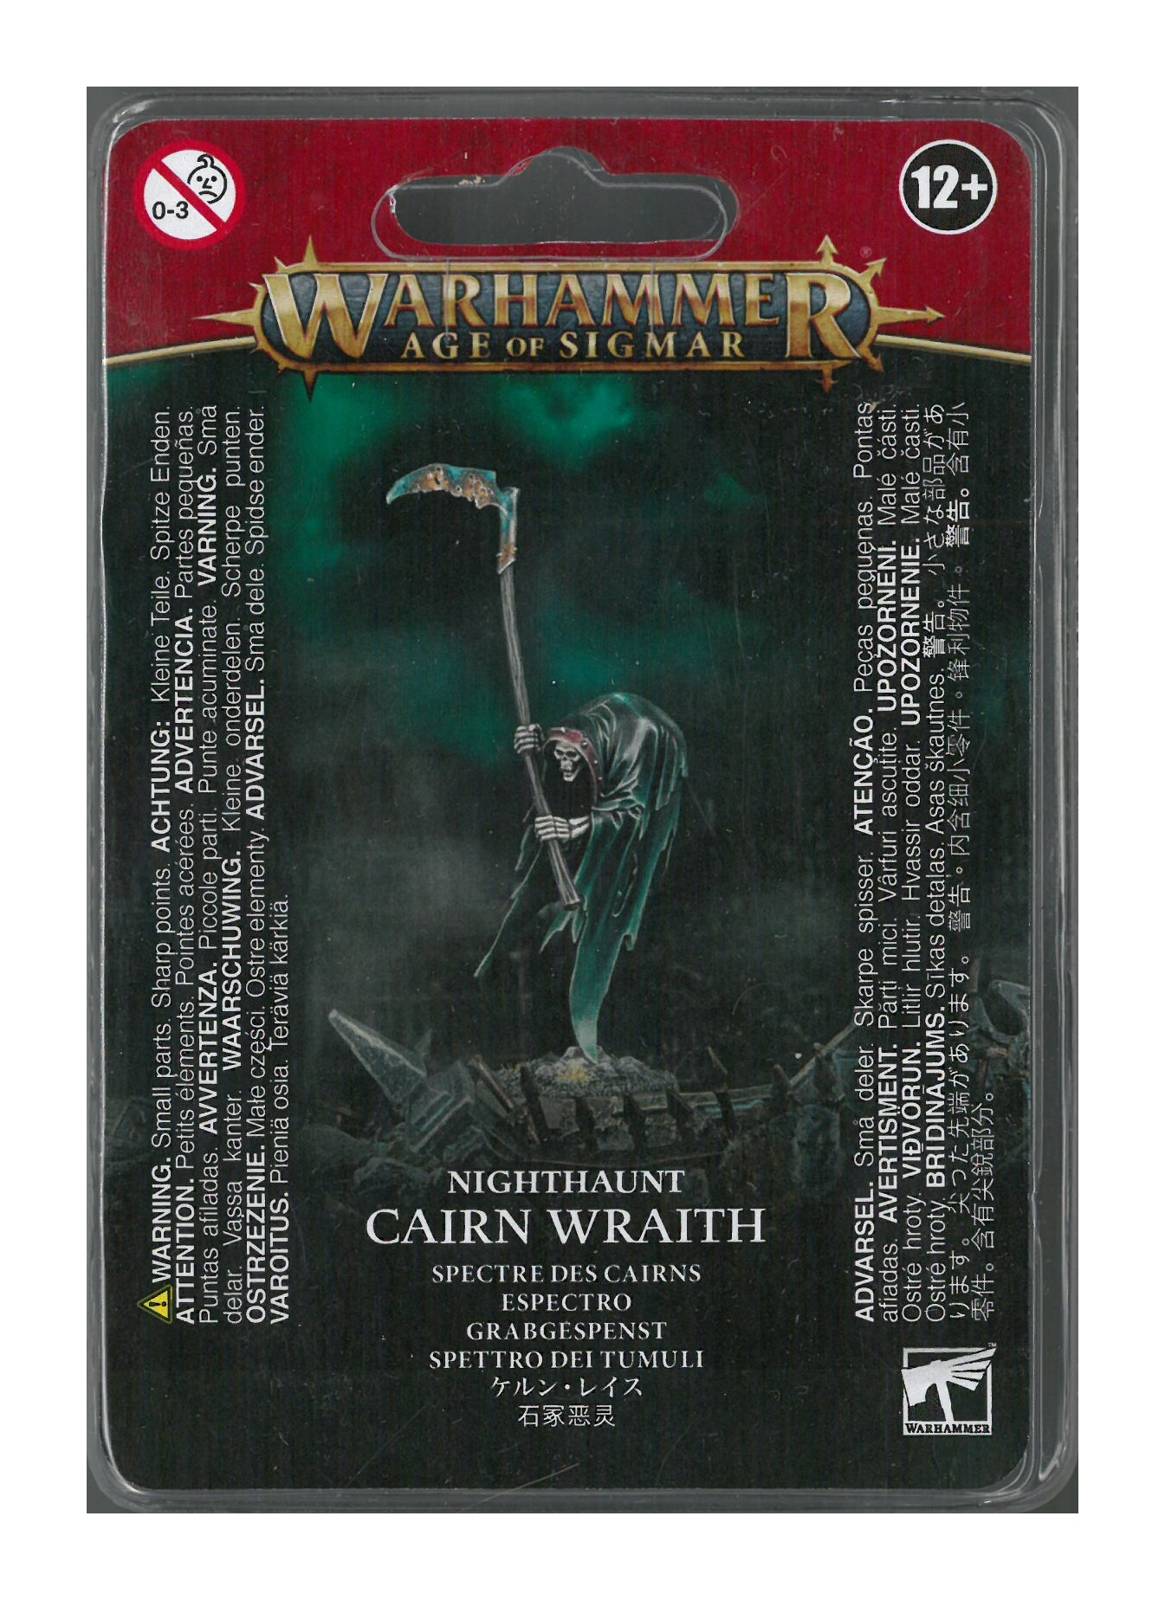 Nighthaunt - Cairn Wraith (91-32)